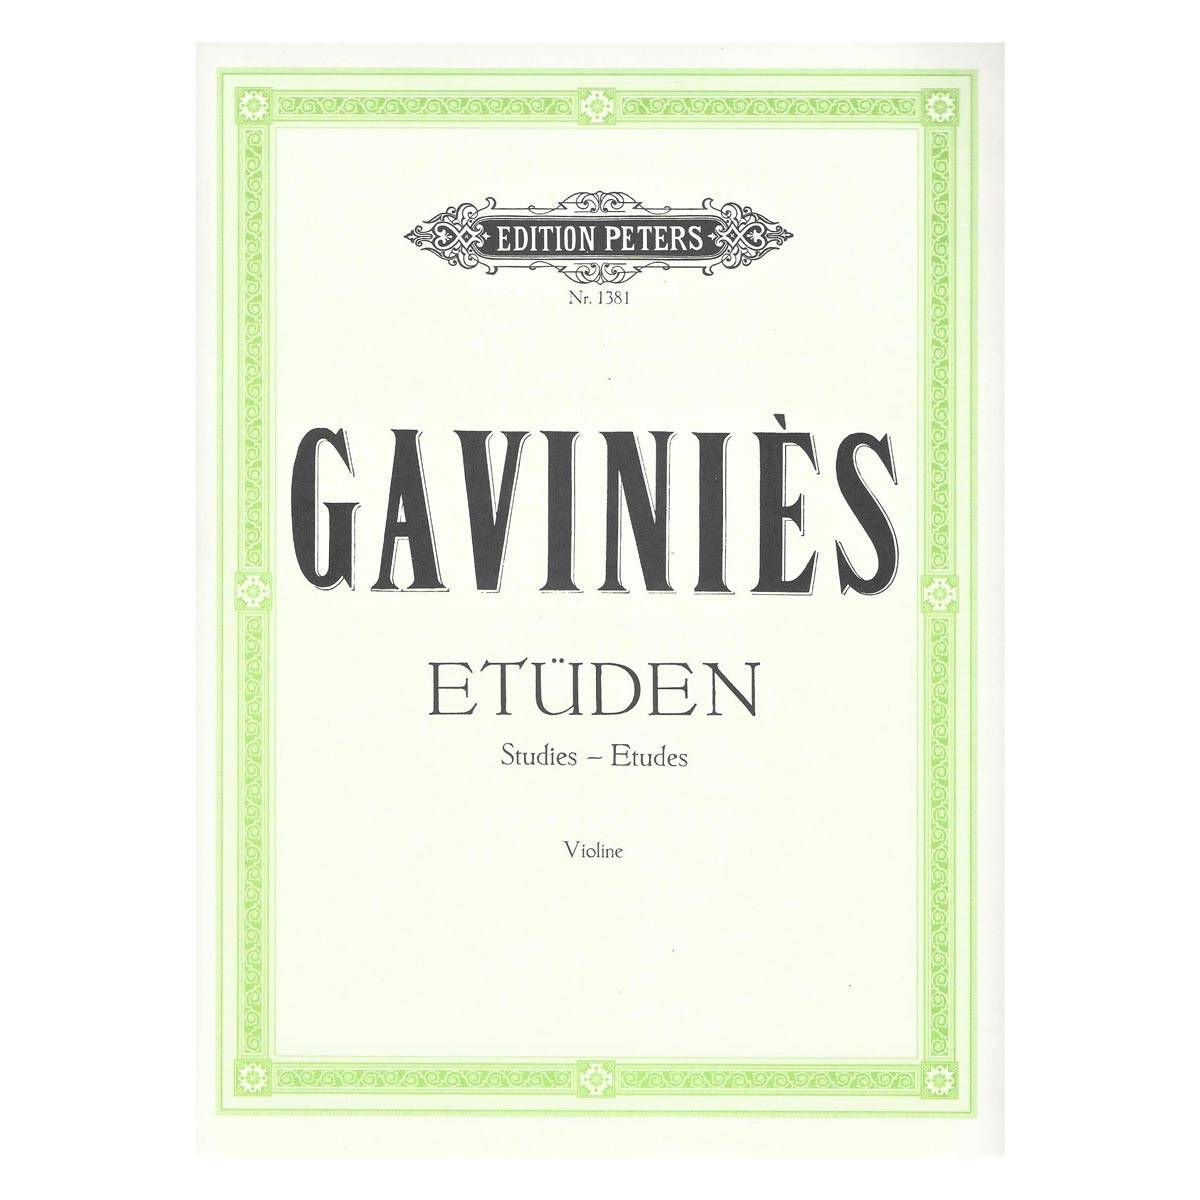 Gavinies - 24 Studies